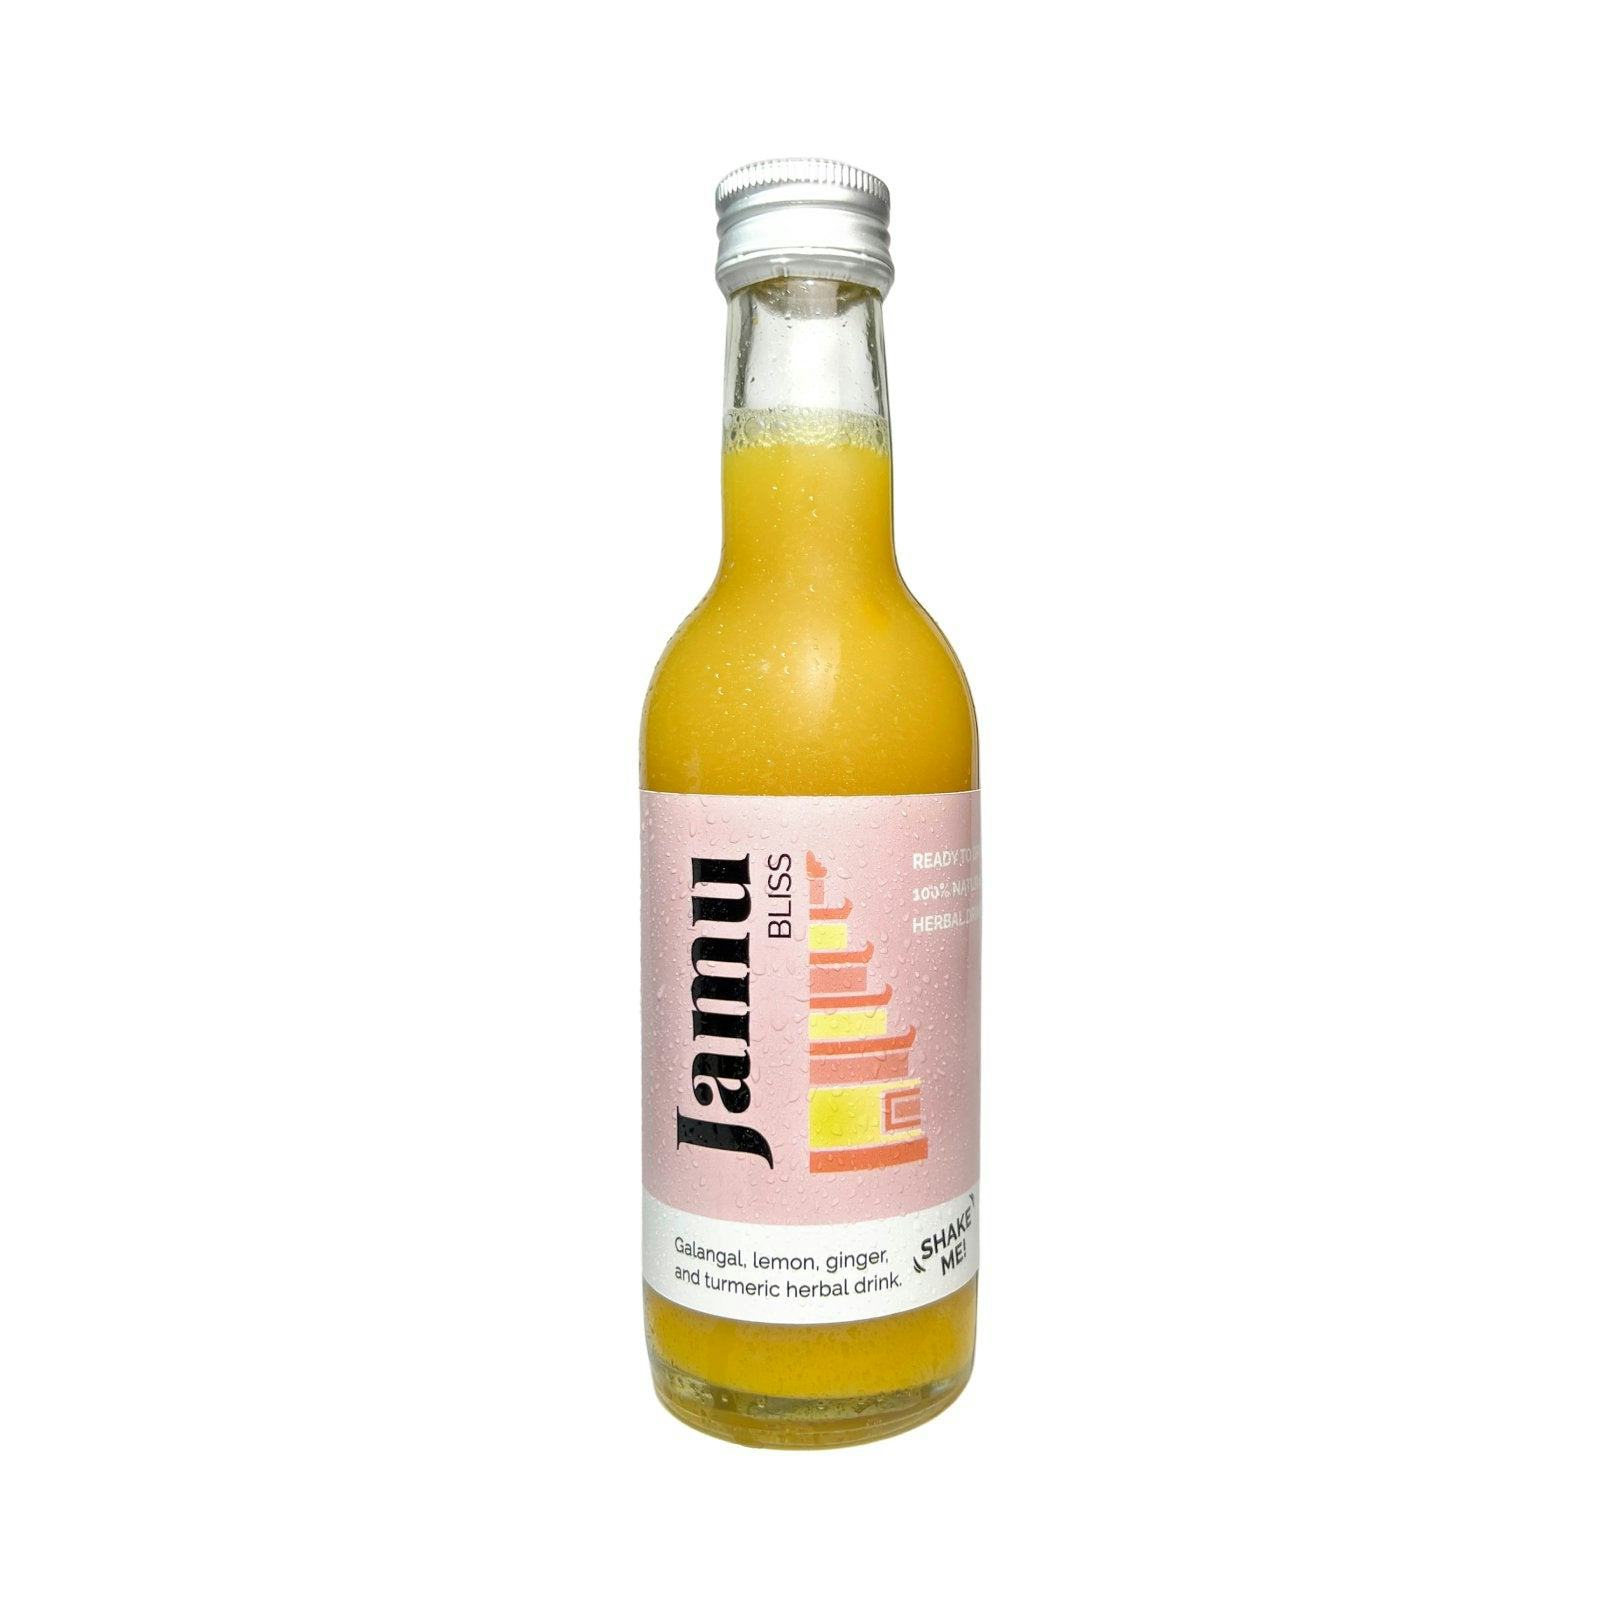 Jamu Bliss, Galangal drink, prodotto artigianale per la vendita diretta in Svizzera